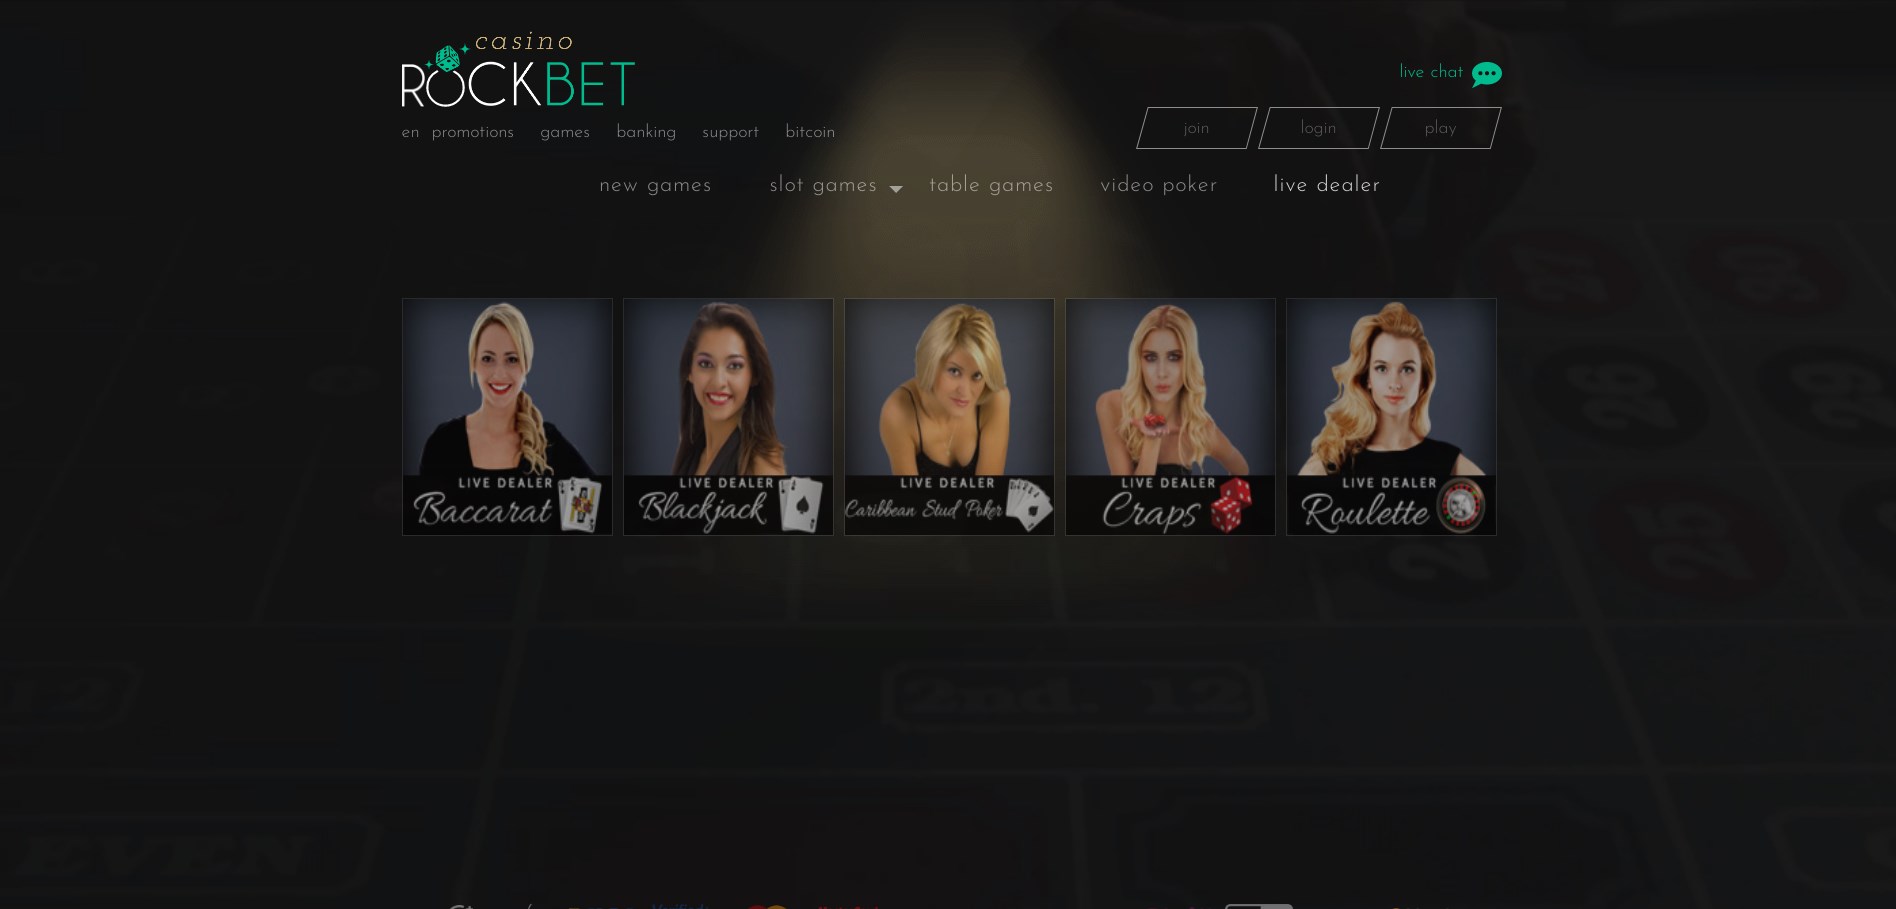 Rockbet Casino Live Dealer Games